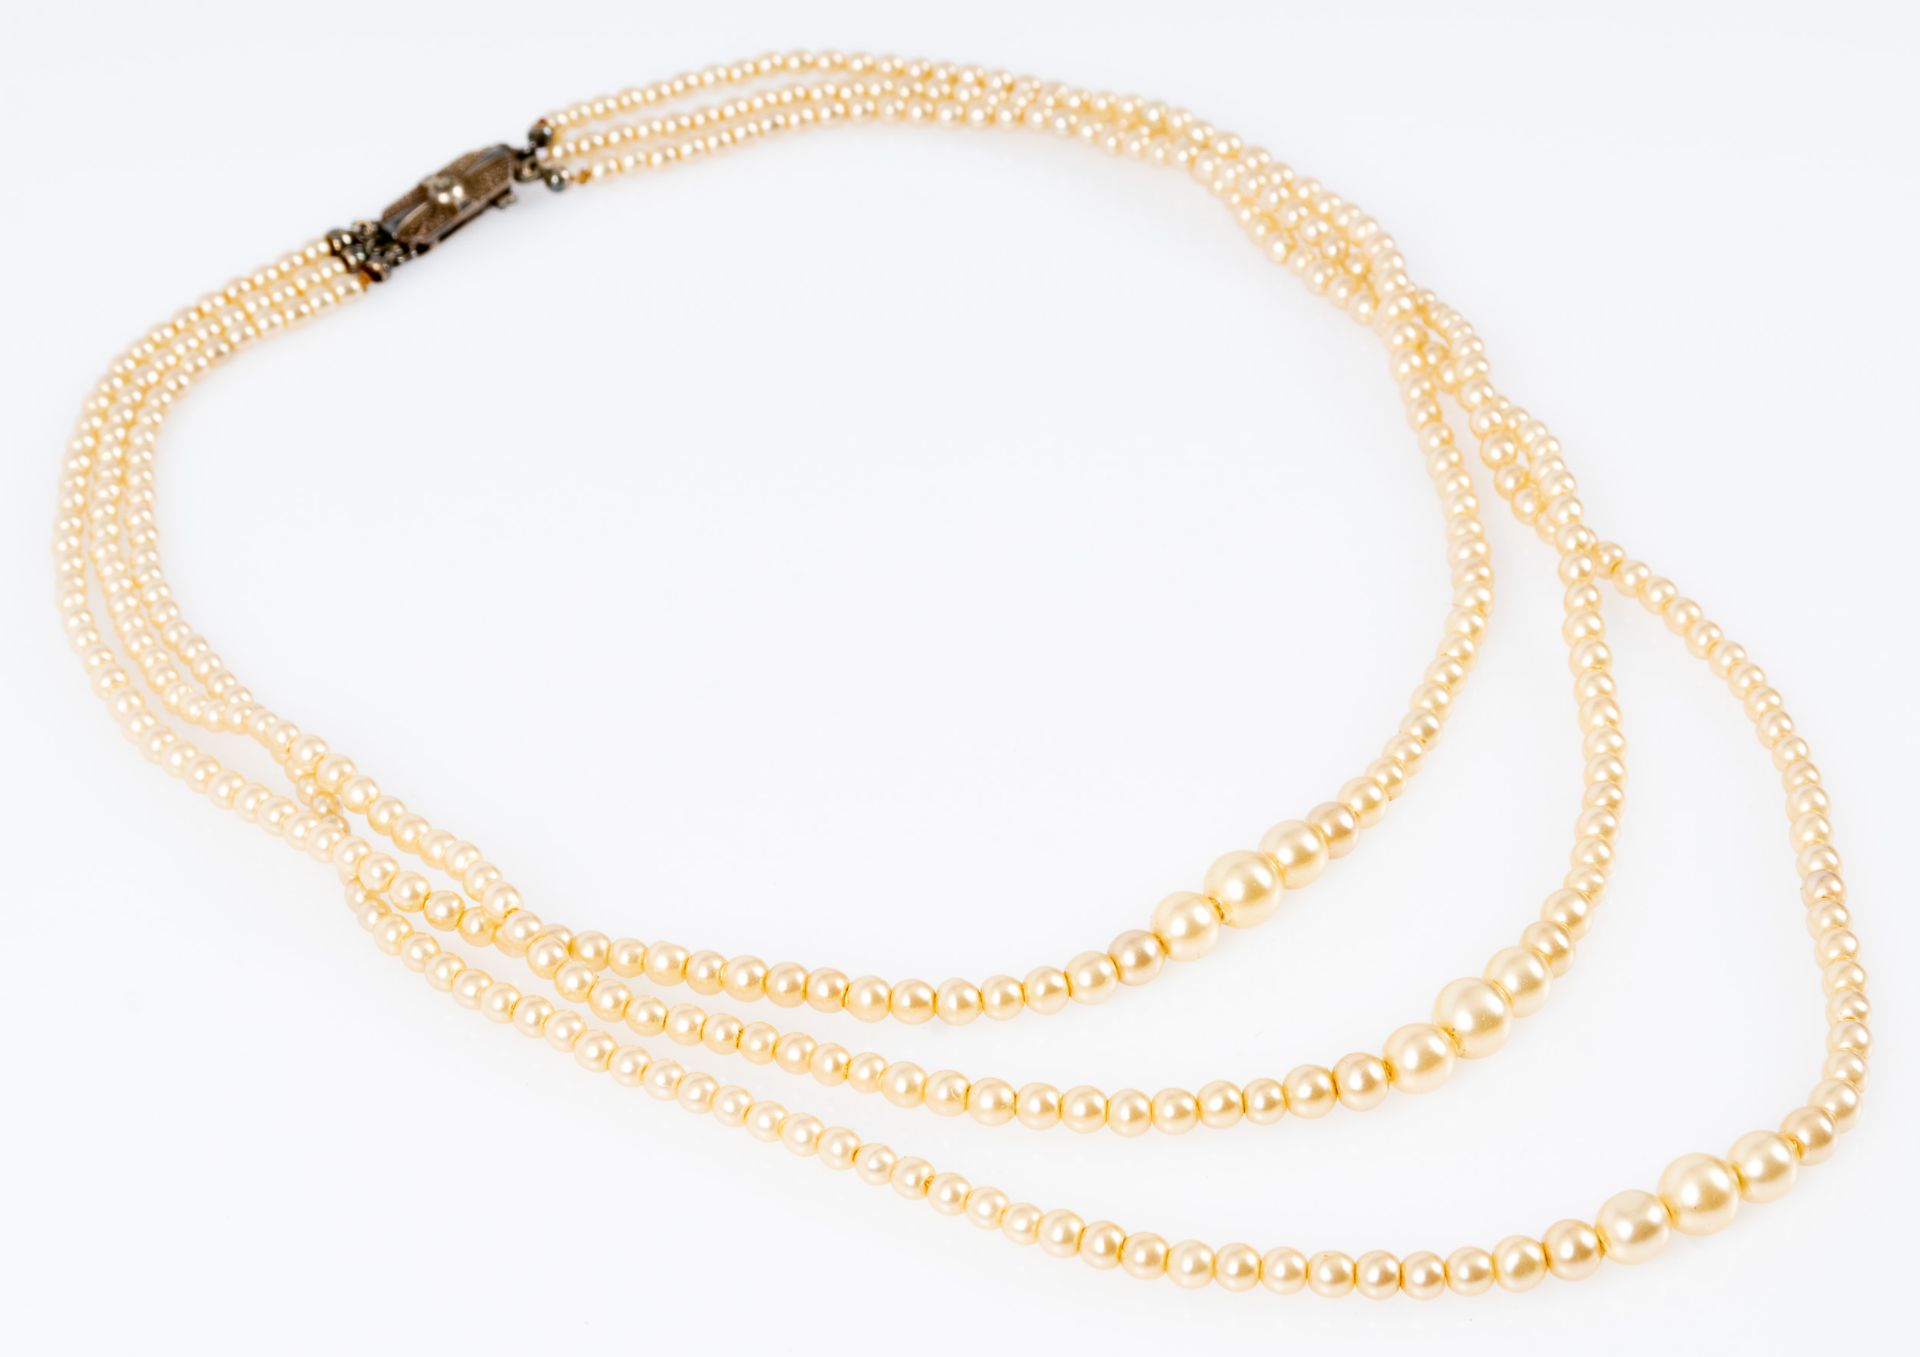 3reihiges, antikes Perlencollier/3reihige Perlenkette um 1900/20, im Verlauf größer/kleiner werdend - Image 2 of 3